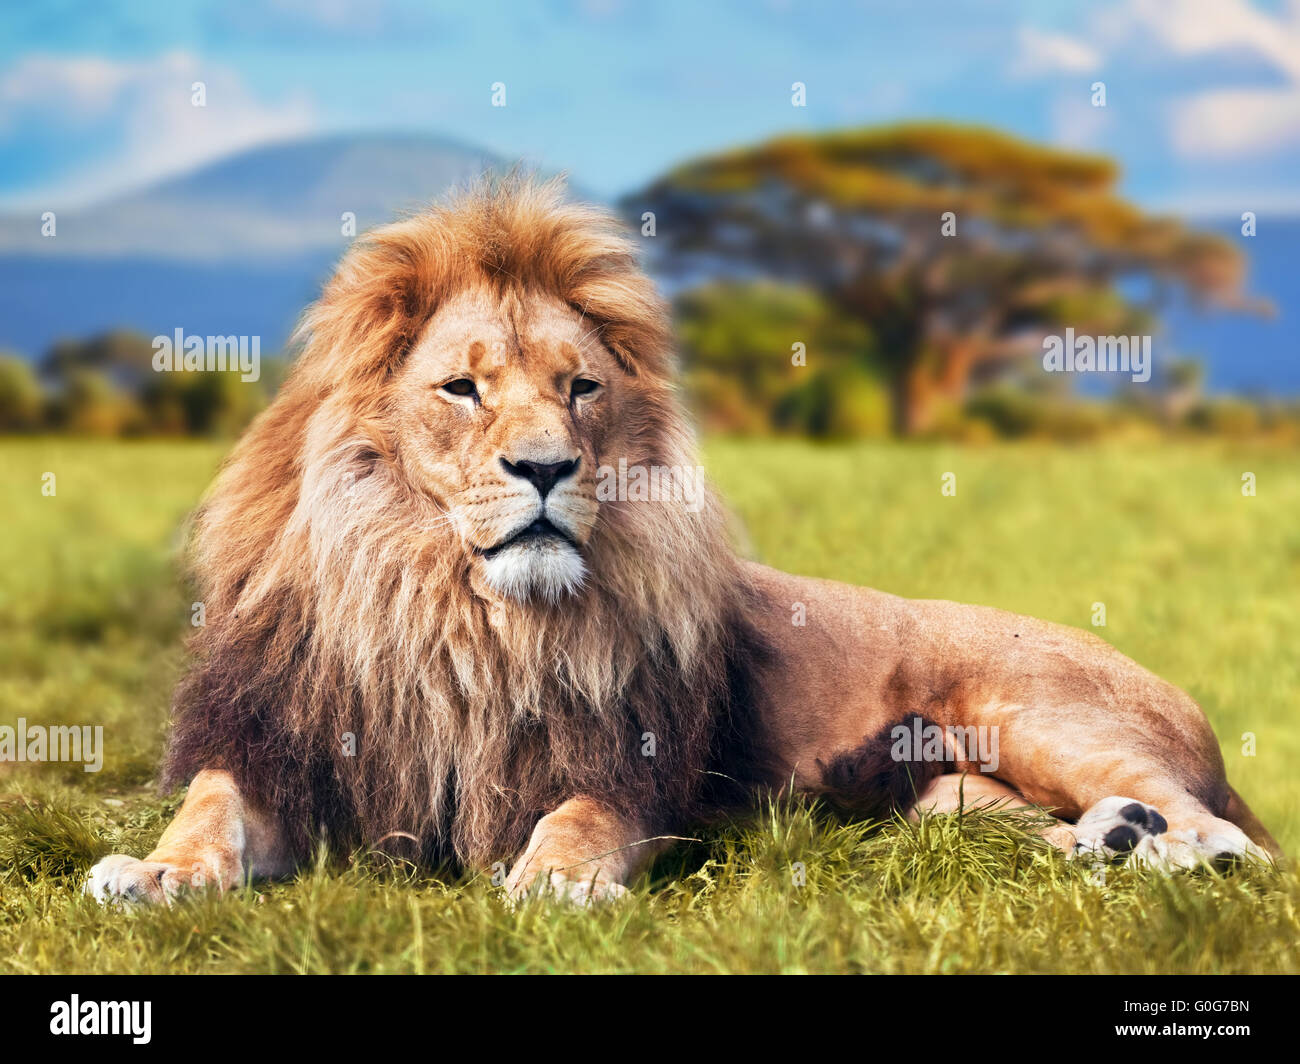 Big lion giacente sulla savana erba. Paesaggio con alberi di caratteristica sulla pianura e le colline in background Foto Stock